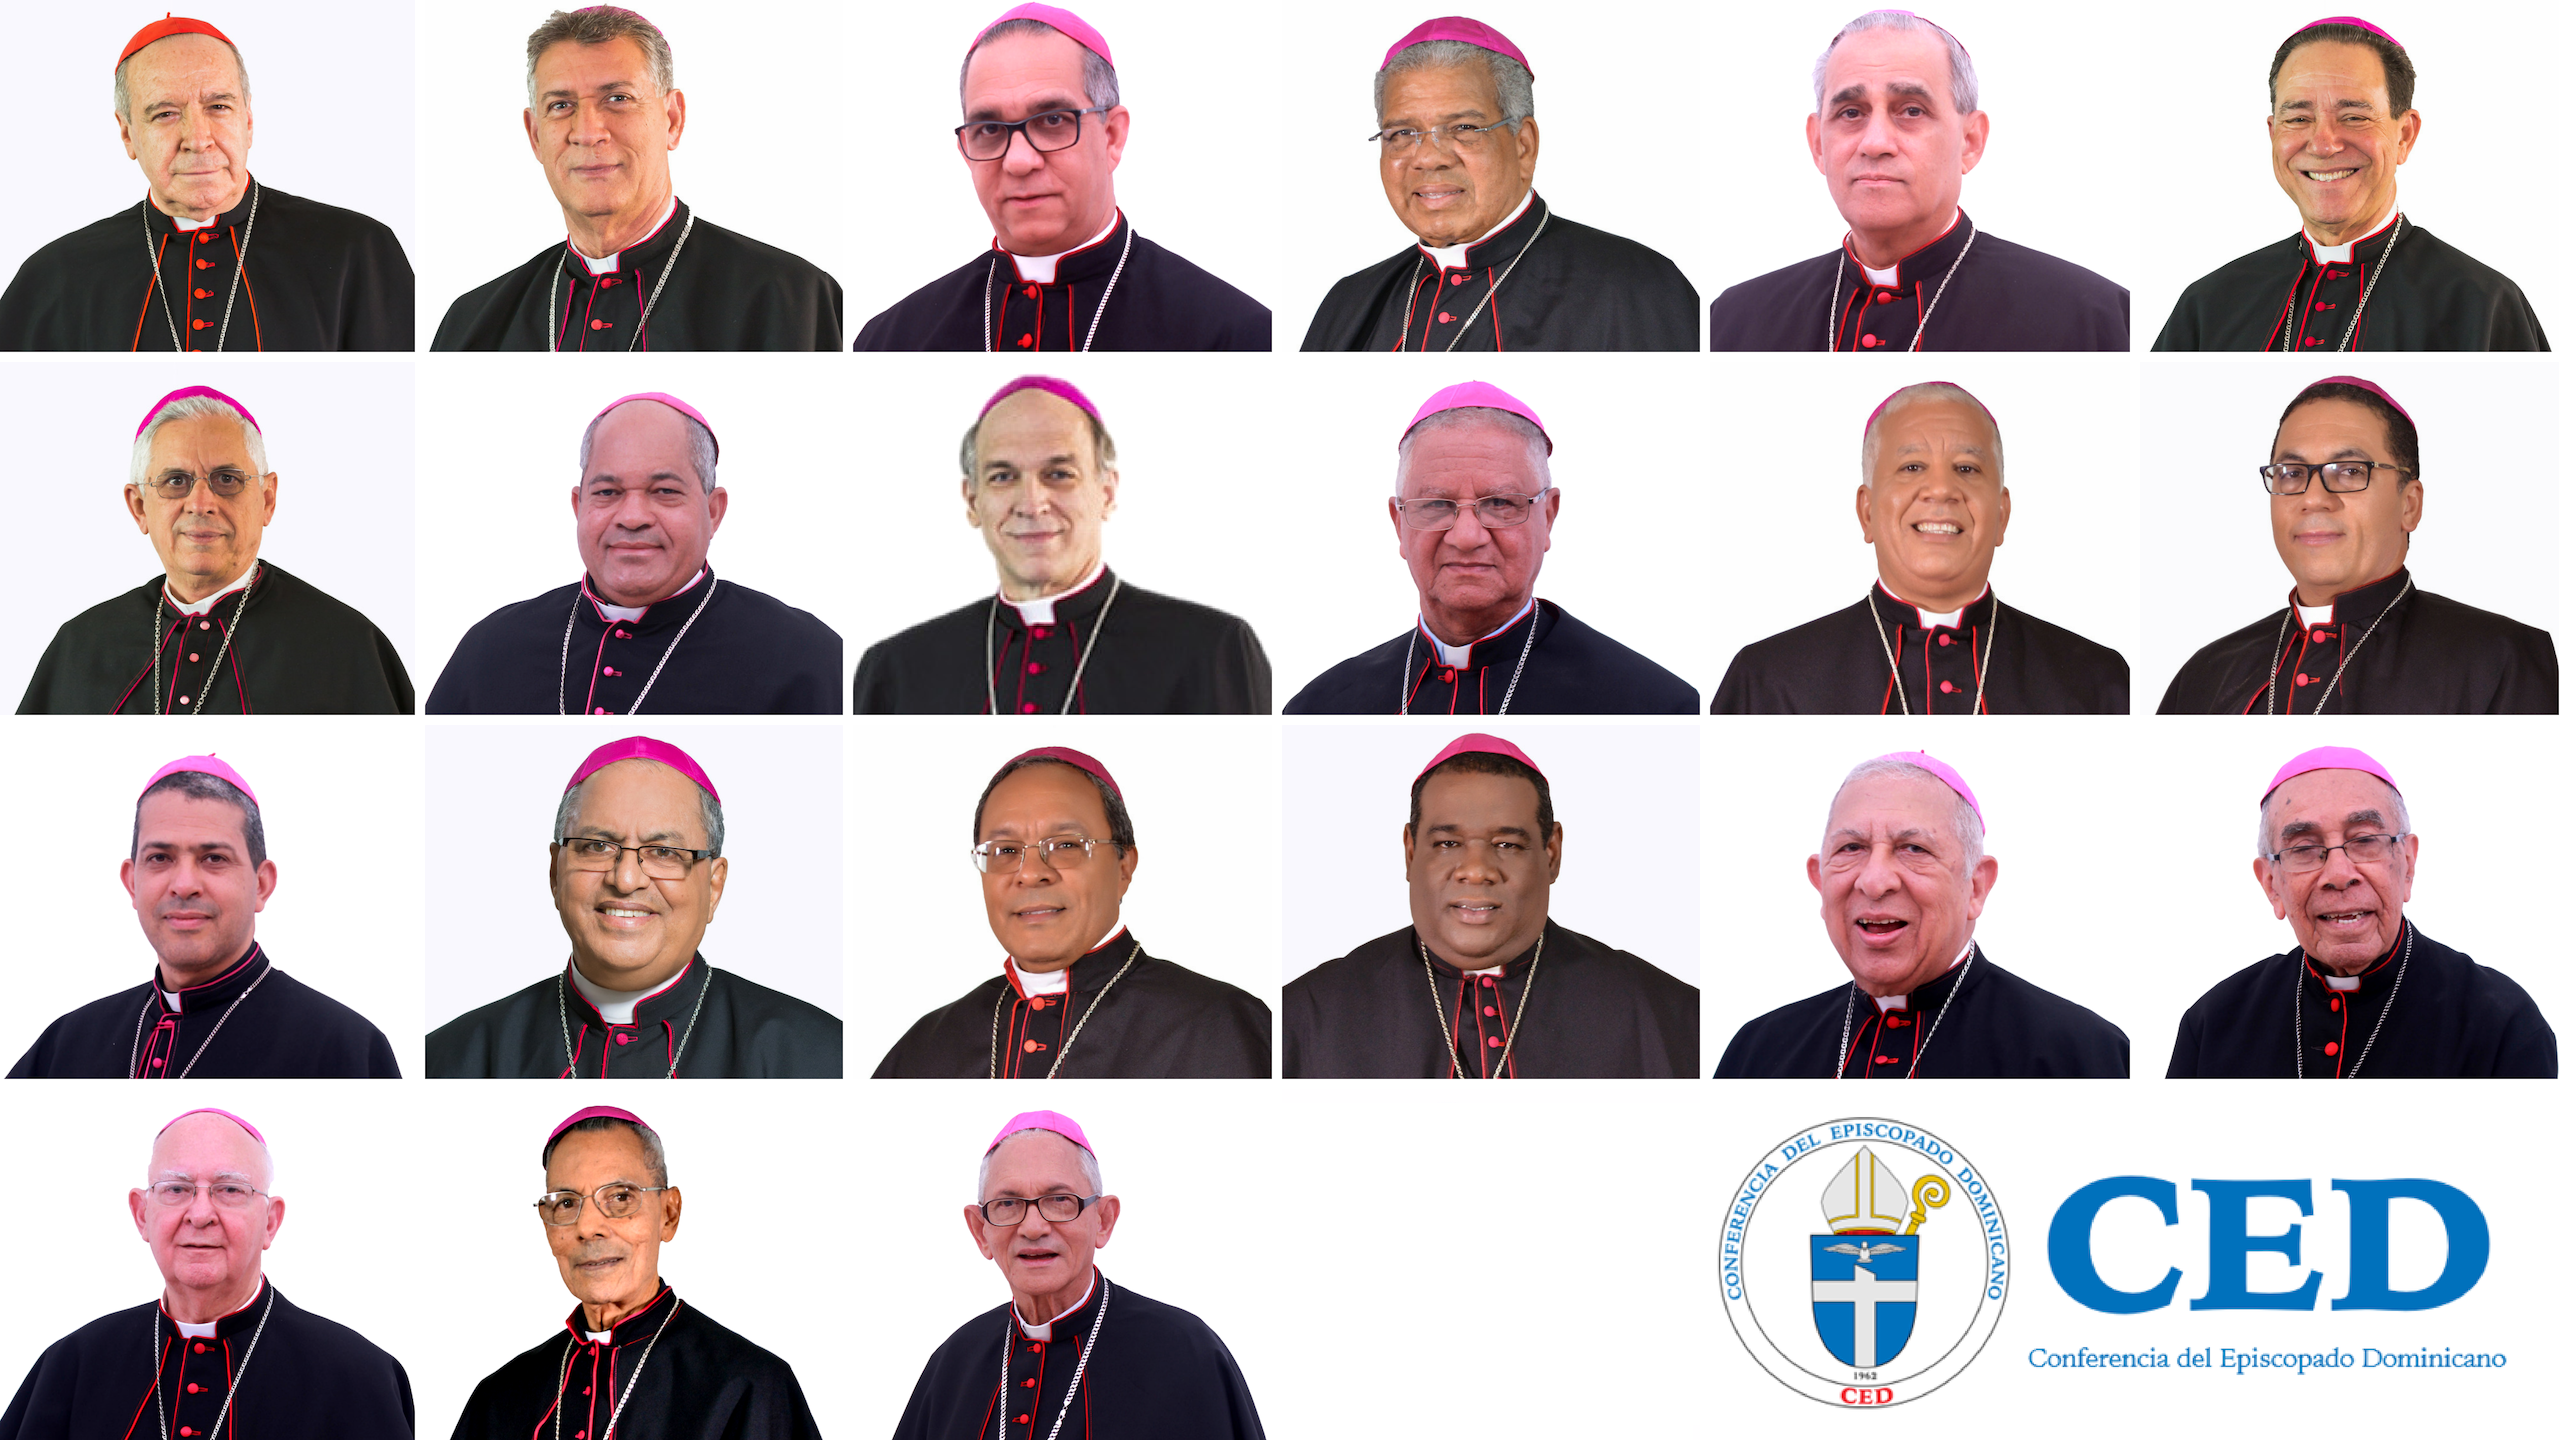 Obispos dominicanos rechazan el aborto que defiende el presidente del país